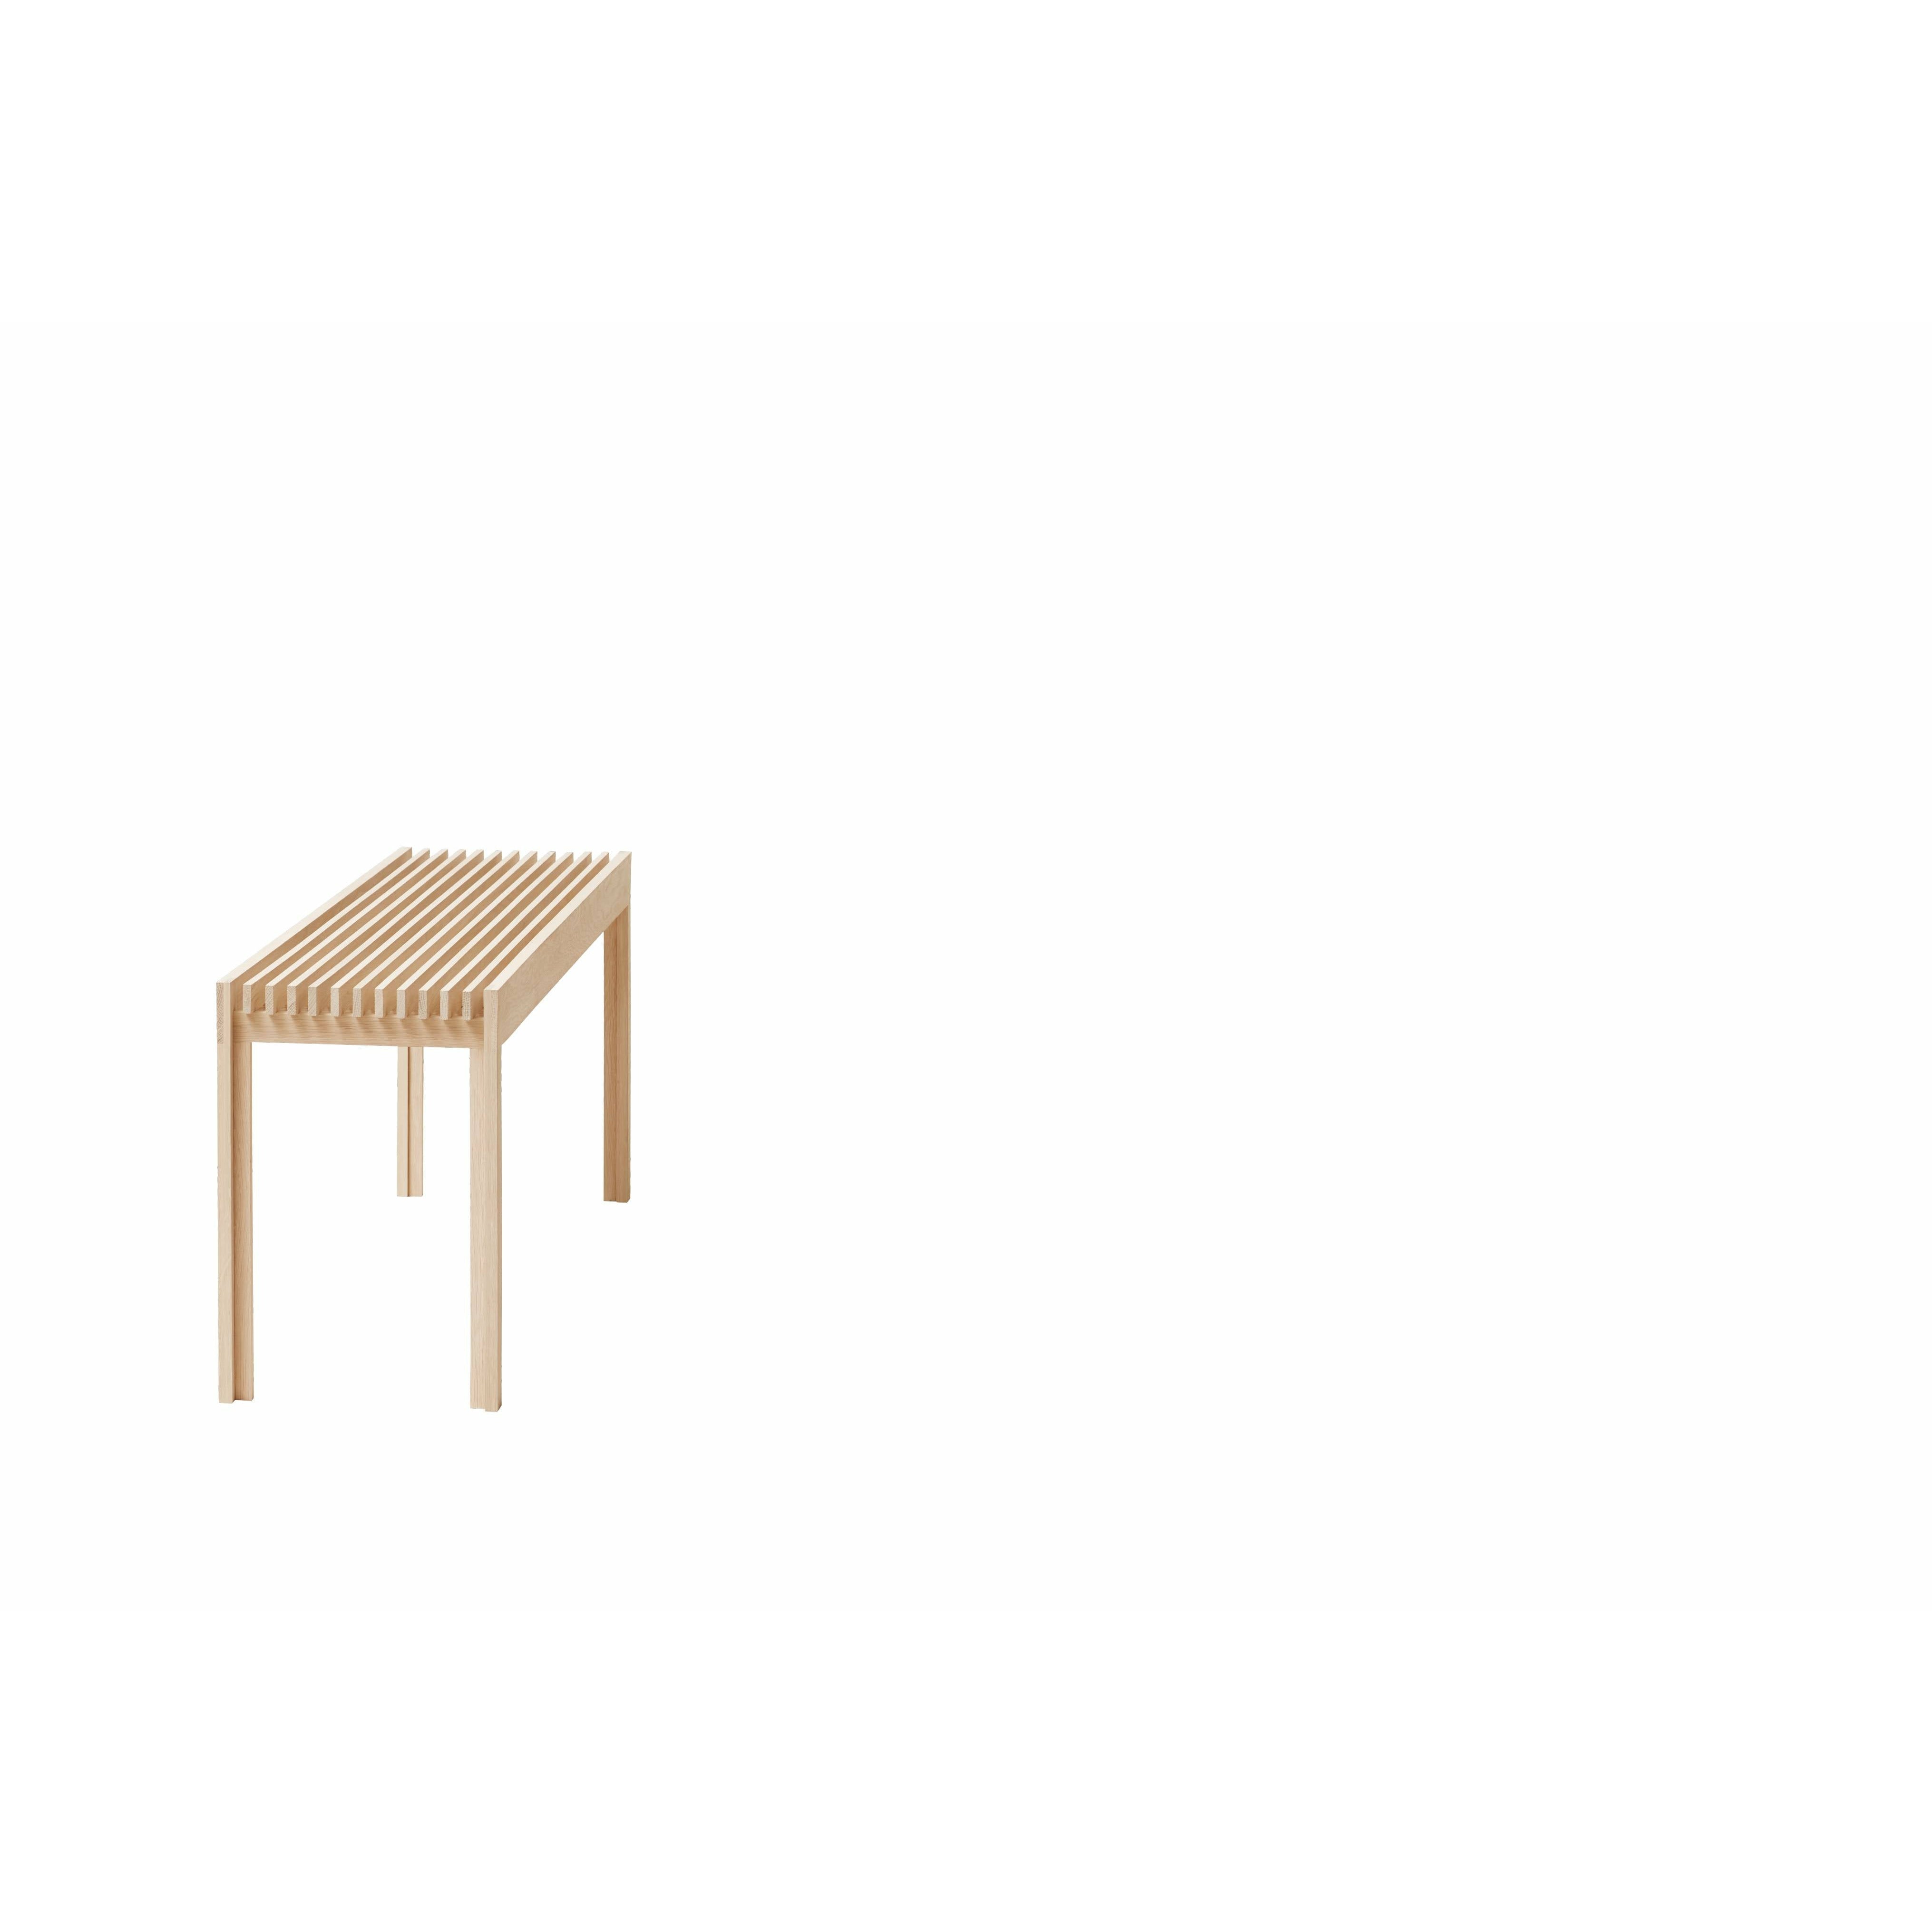 形式和完善轻便的长凳。白橡木